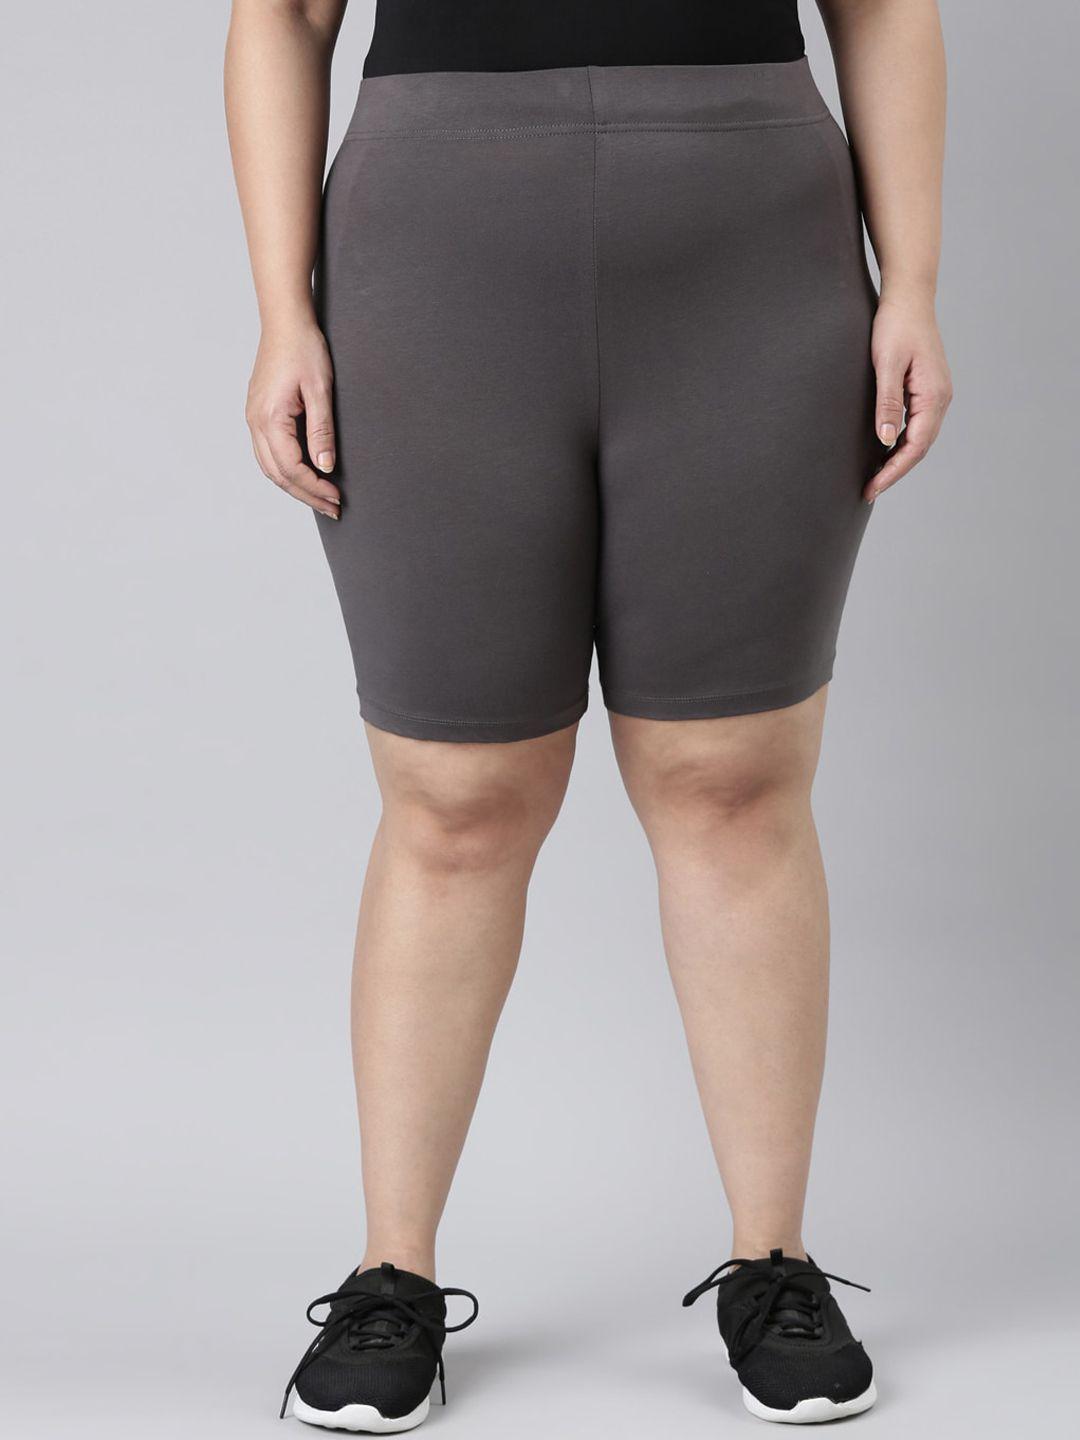 go-colors-plus-size-women-slim-fit-sports-shorts